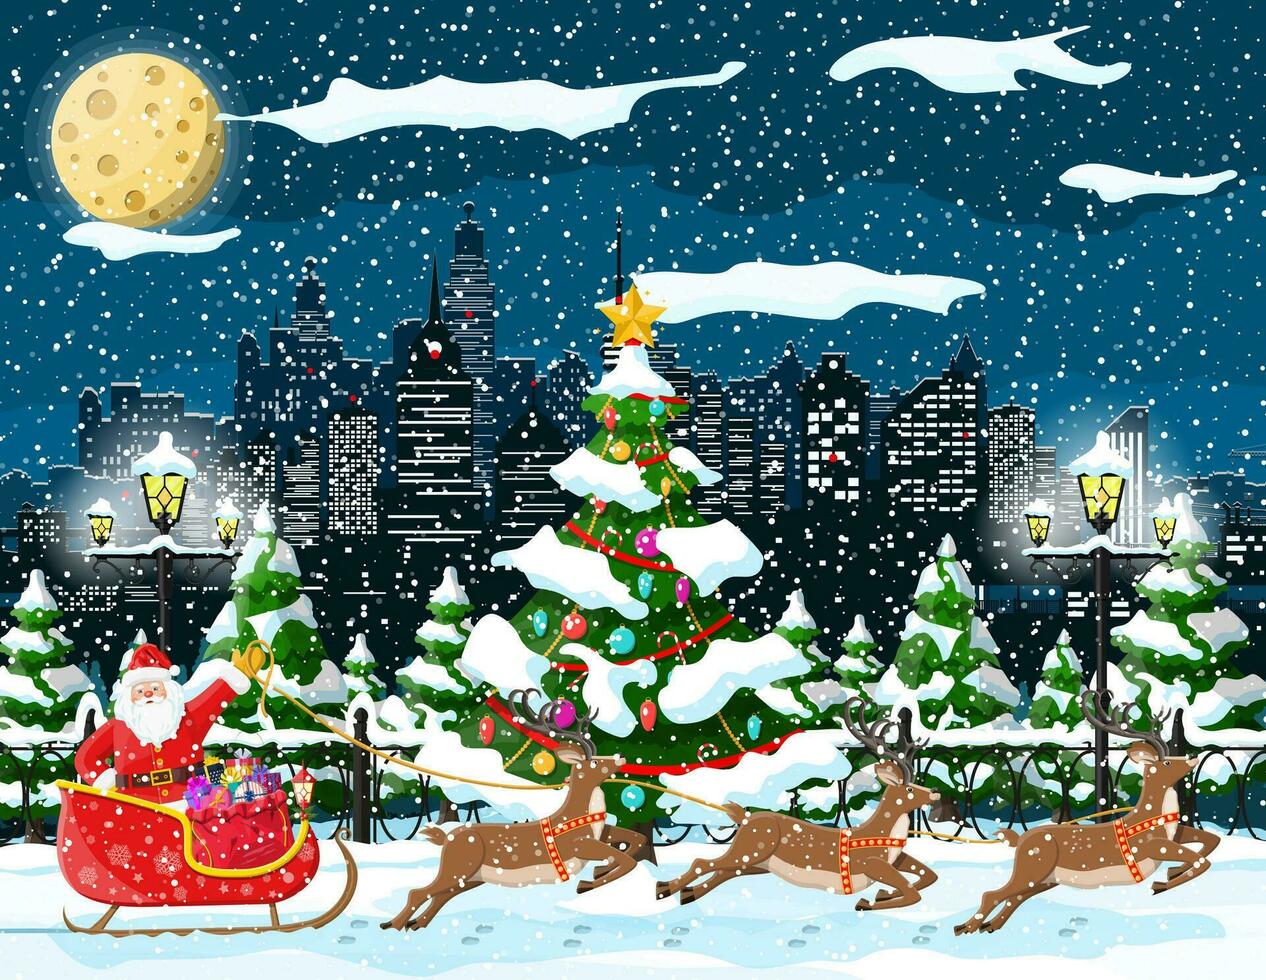 Papa Noel claus paseos reno trineo. Navidad invierno paisaje urbano, abeto árbol, edificios contento nuevo año decoración. alegre Navidad día festivo. nuevo año y Navidad celebracion. vector ilustración plano estilo